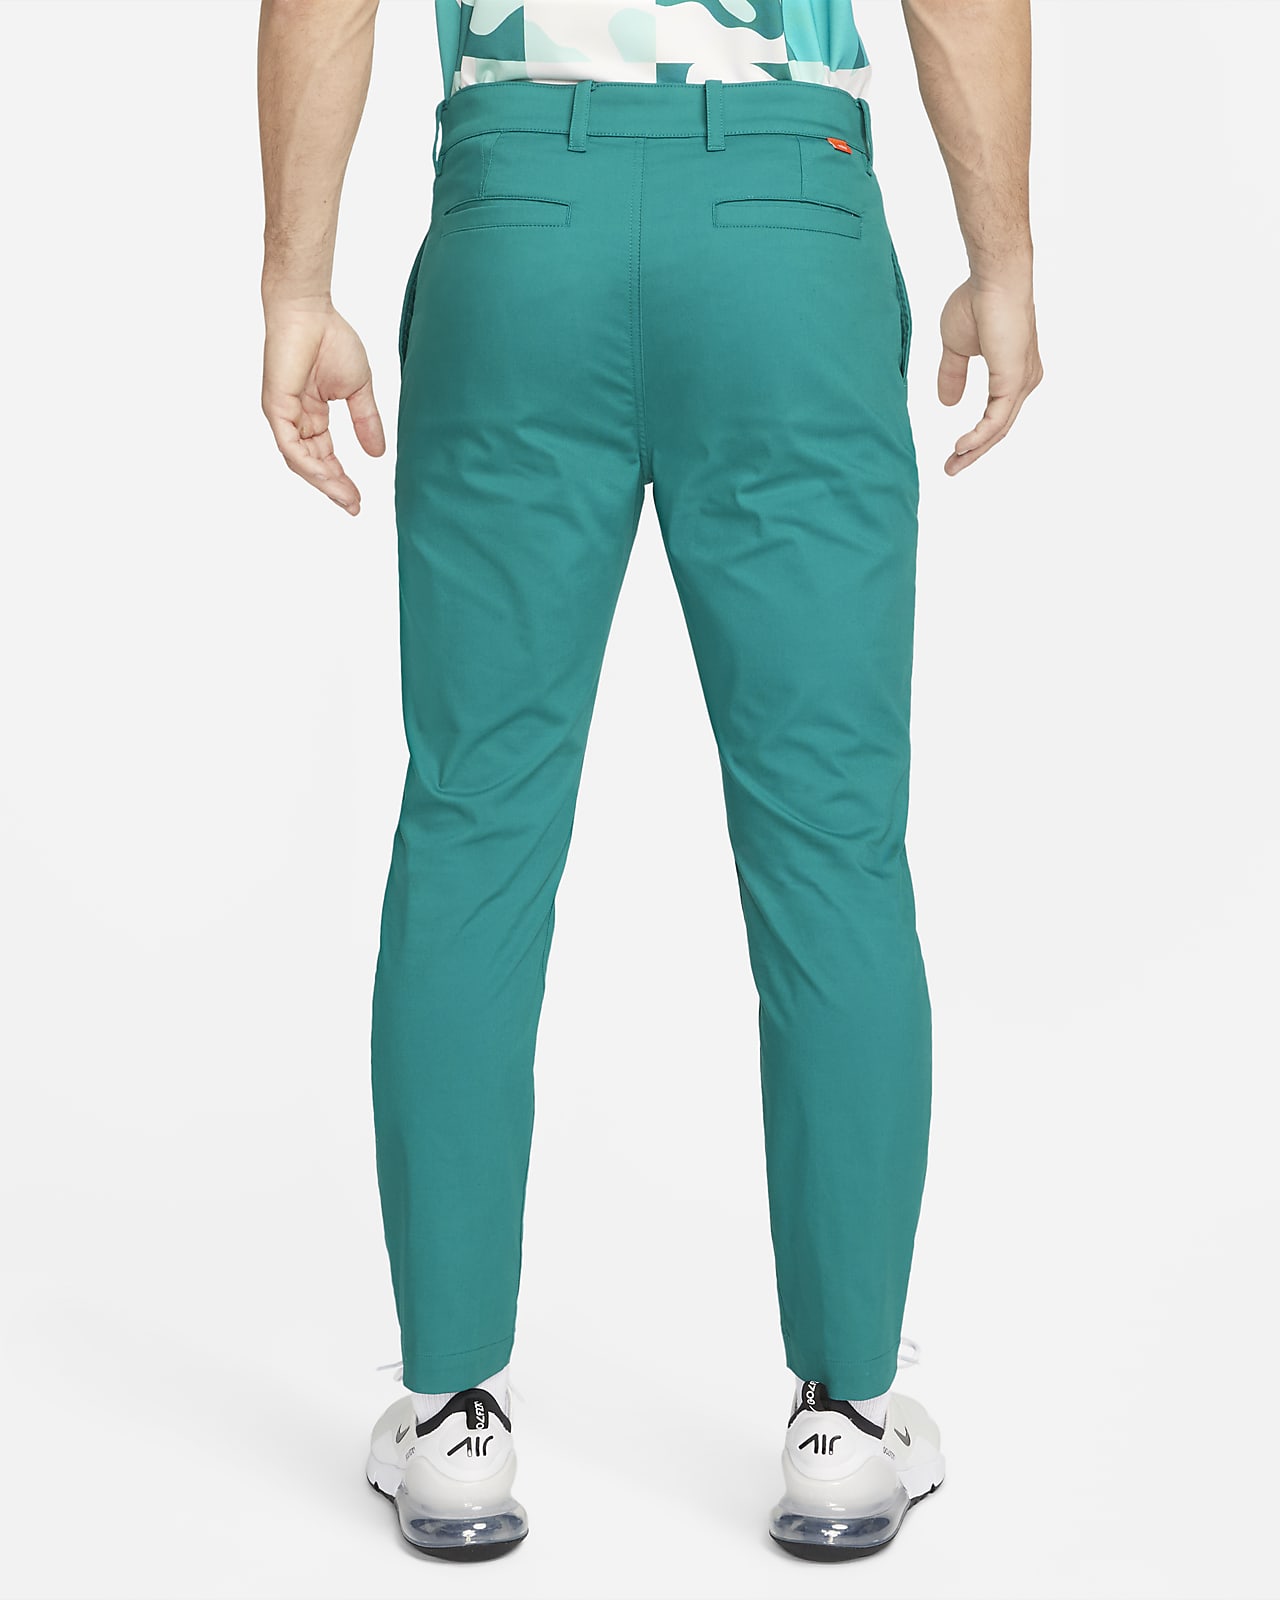 Nike Golf Dri-Fit UV Chino Pants Slim Mens Trousers